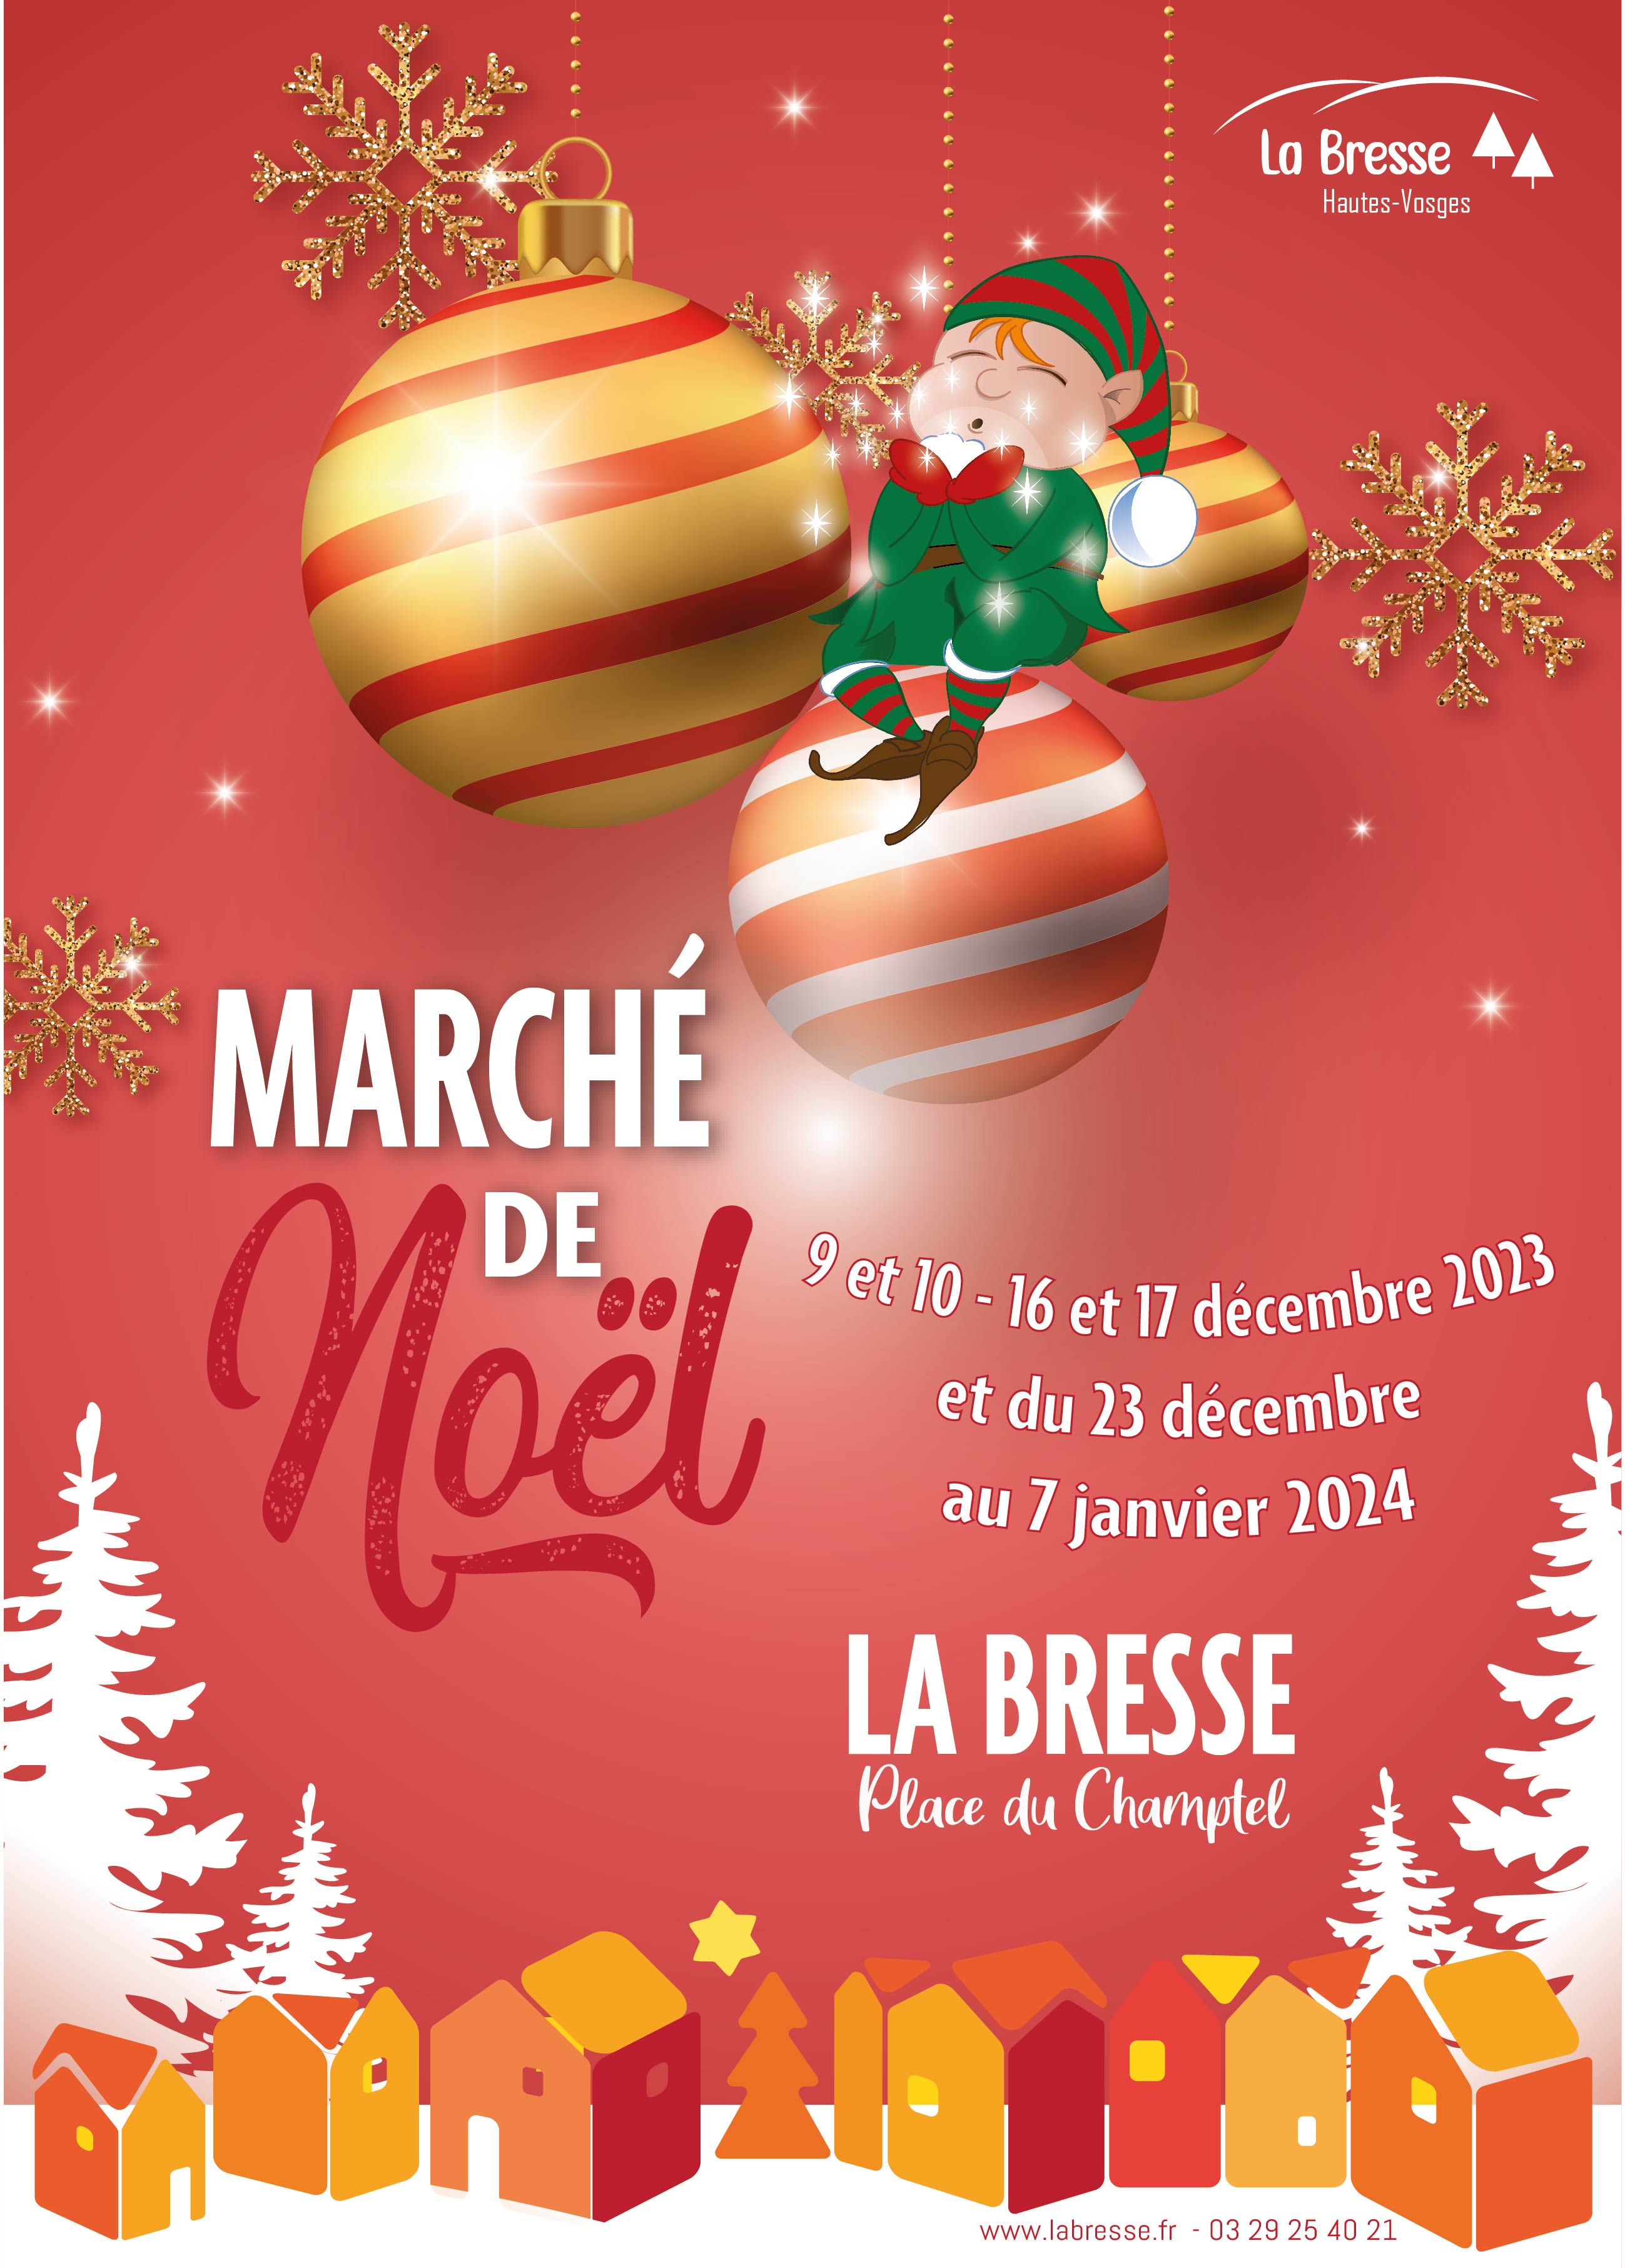 Marché de Noël La Bresse